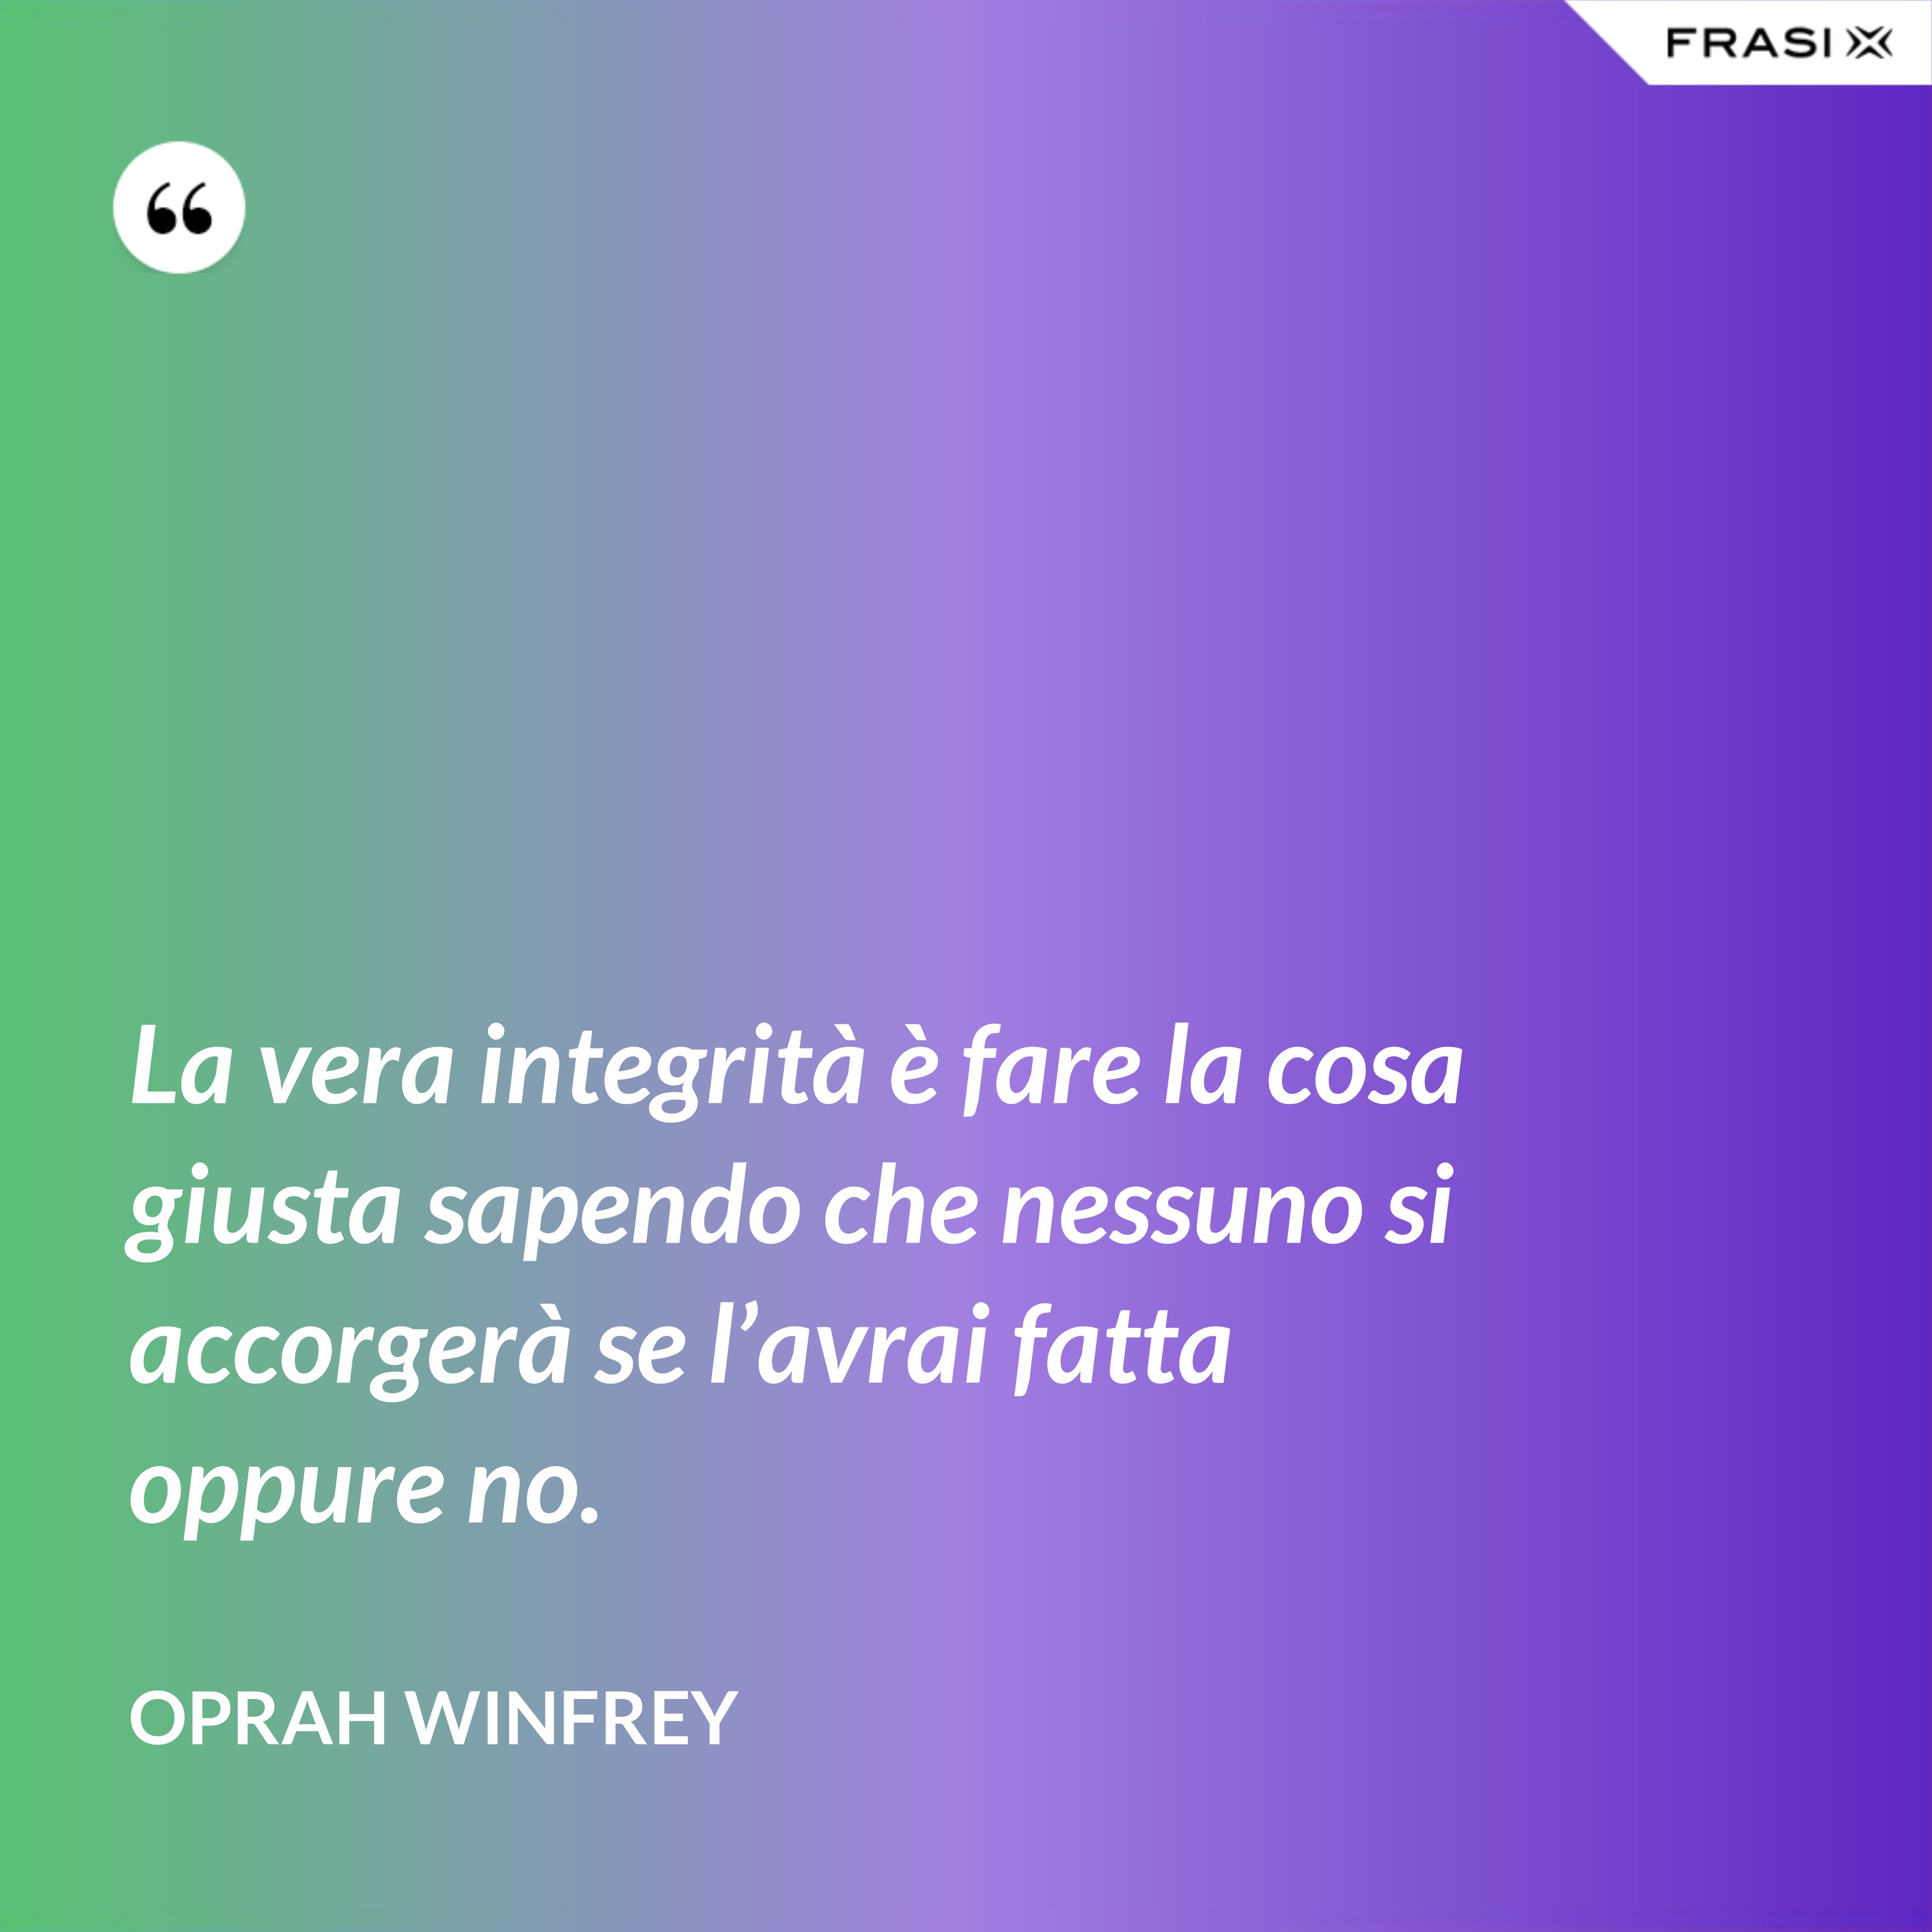 La vera integrità è fare la cosa giusta sapendo che nessuno si accorgerà se l’avrai fatta oppure no. - Oprah Winfrey